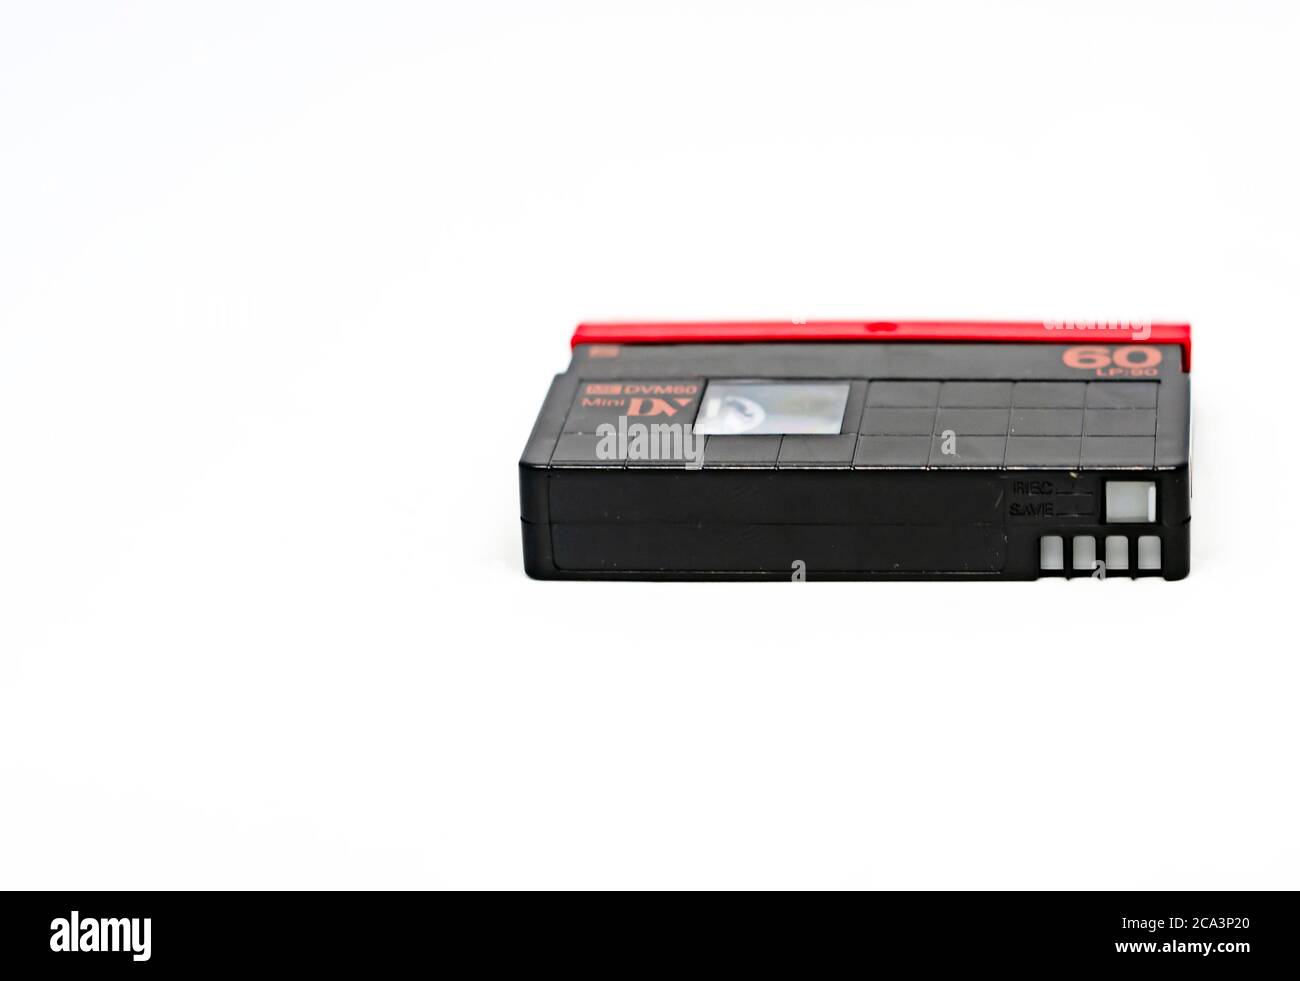 Vista laterale di una videocassetta in formato Mini DV isolata su sfondo bianco. Le cassette MiniDV erano destinate all'uso amatoriale, Foto Stock